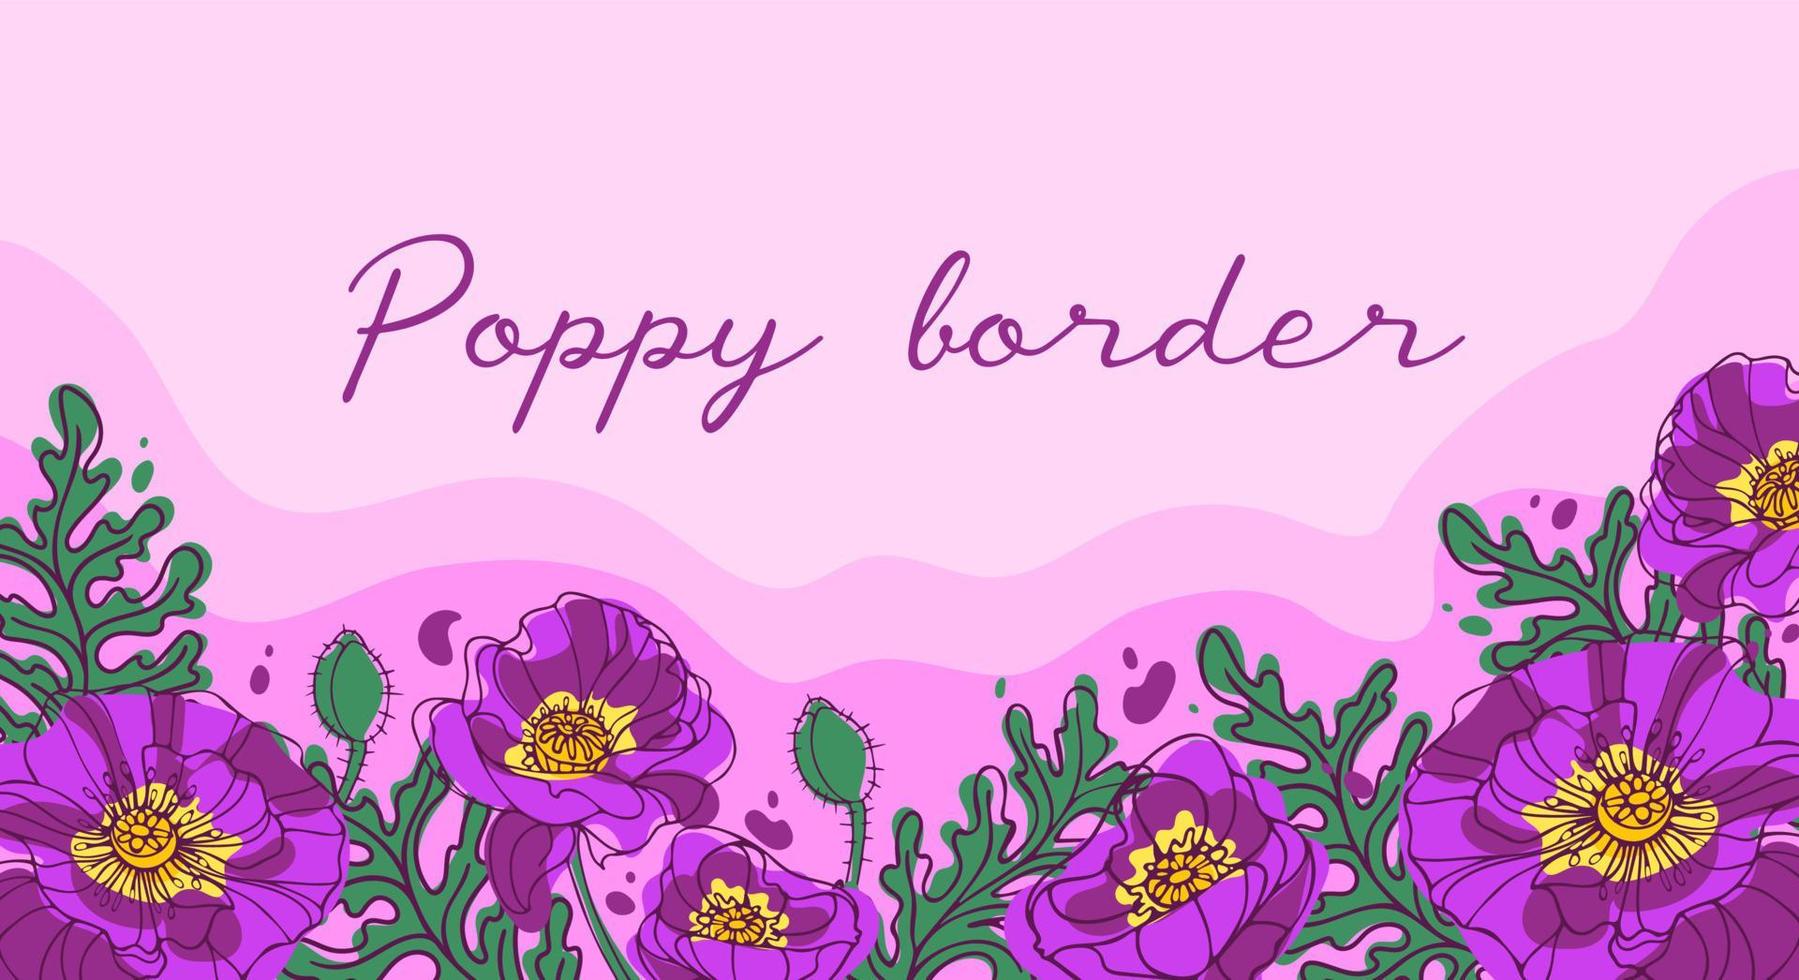 horizontaal grens met helder bloeiend papavers. in roze en groen kleuren. botanisch illustratie voor achtergrond, kaarten, website, affiches, flyers vector